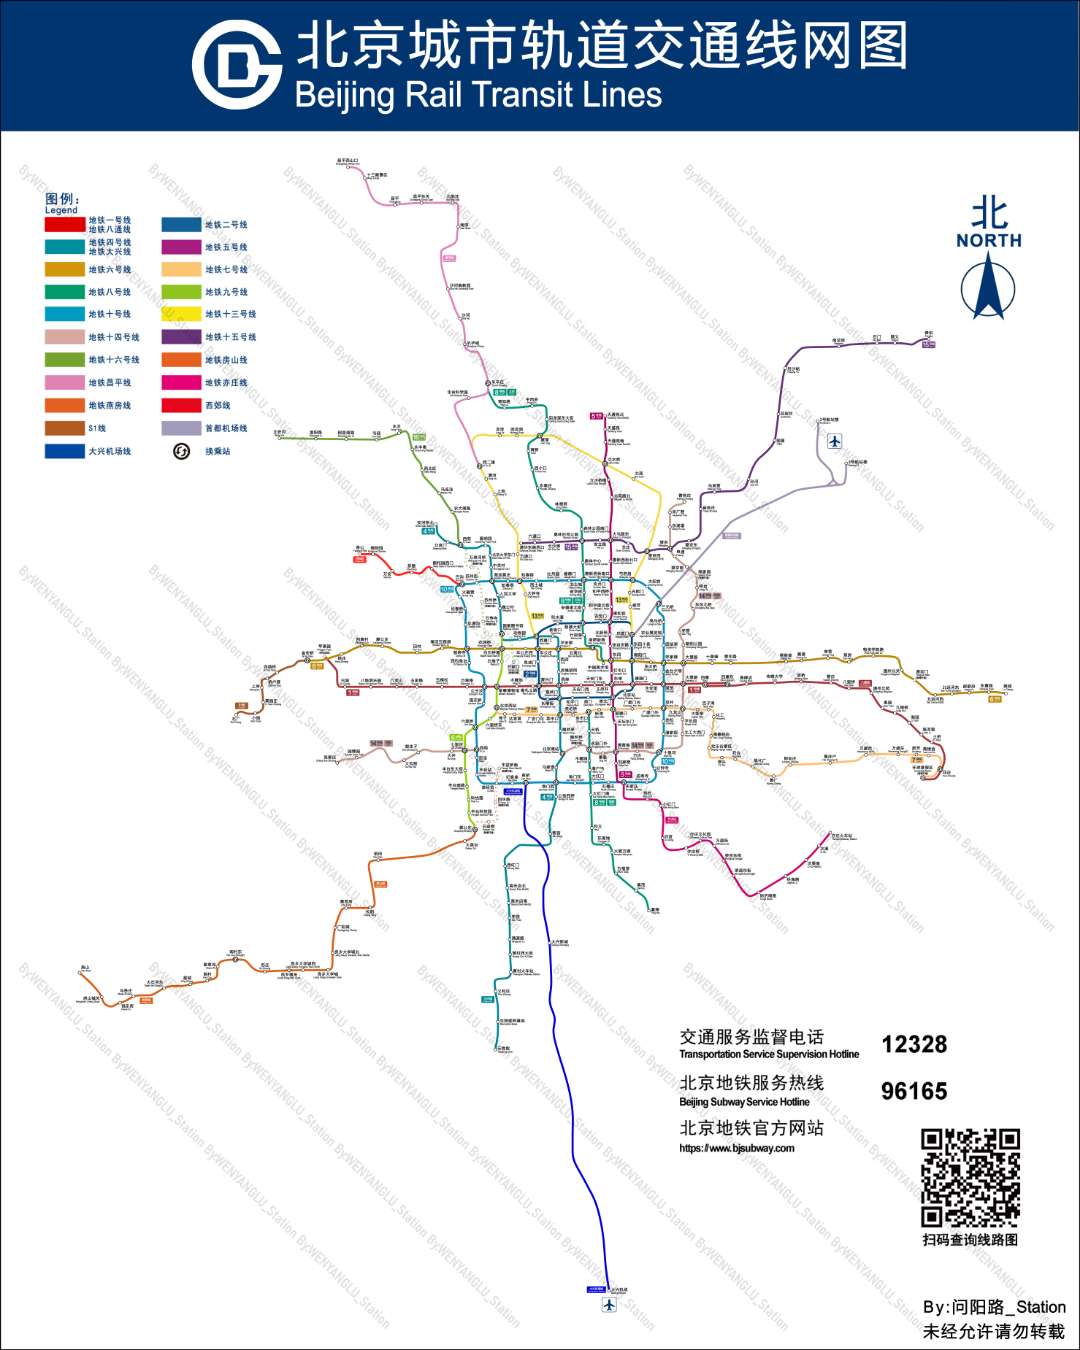 【北京地铁】北京城市轨道交通线网图(仿官方·实际比例·持续更新)